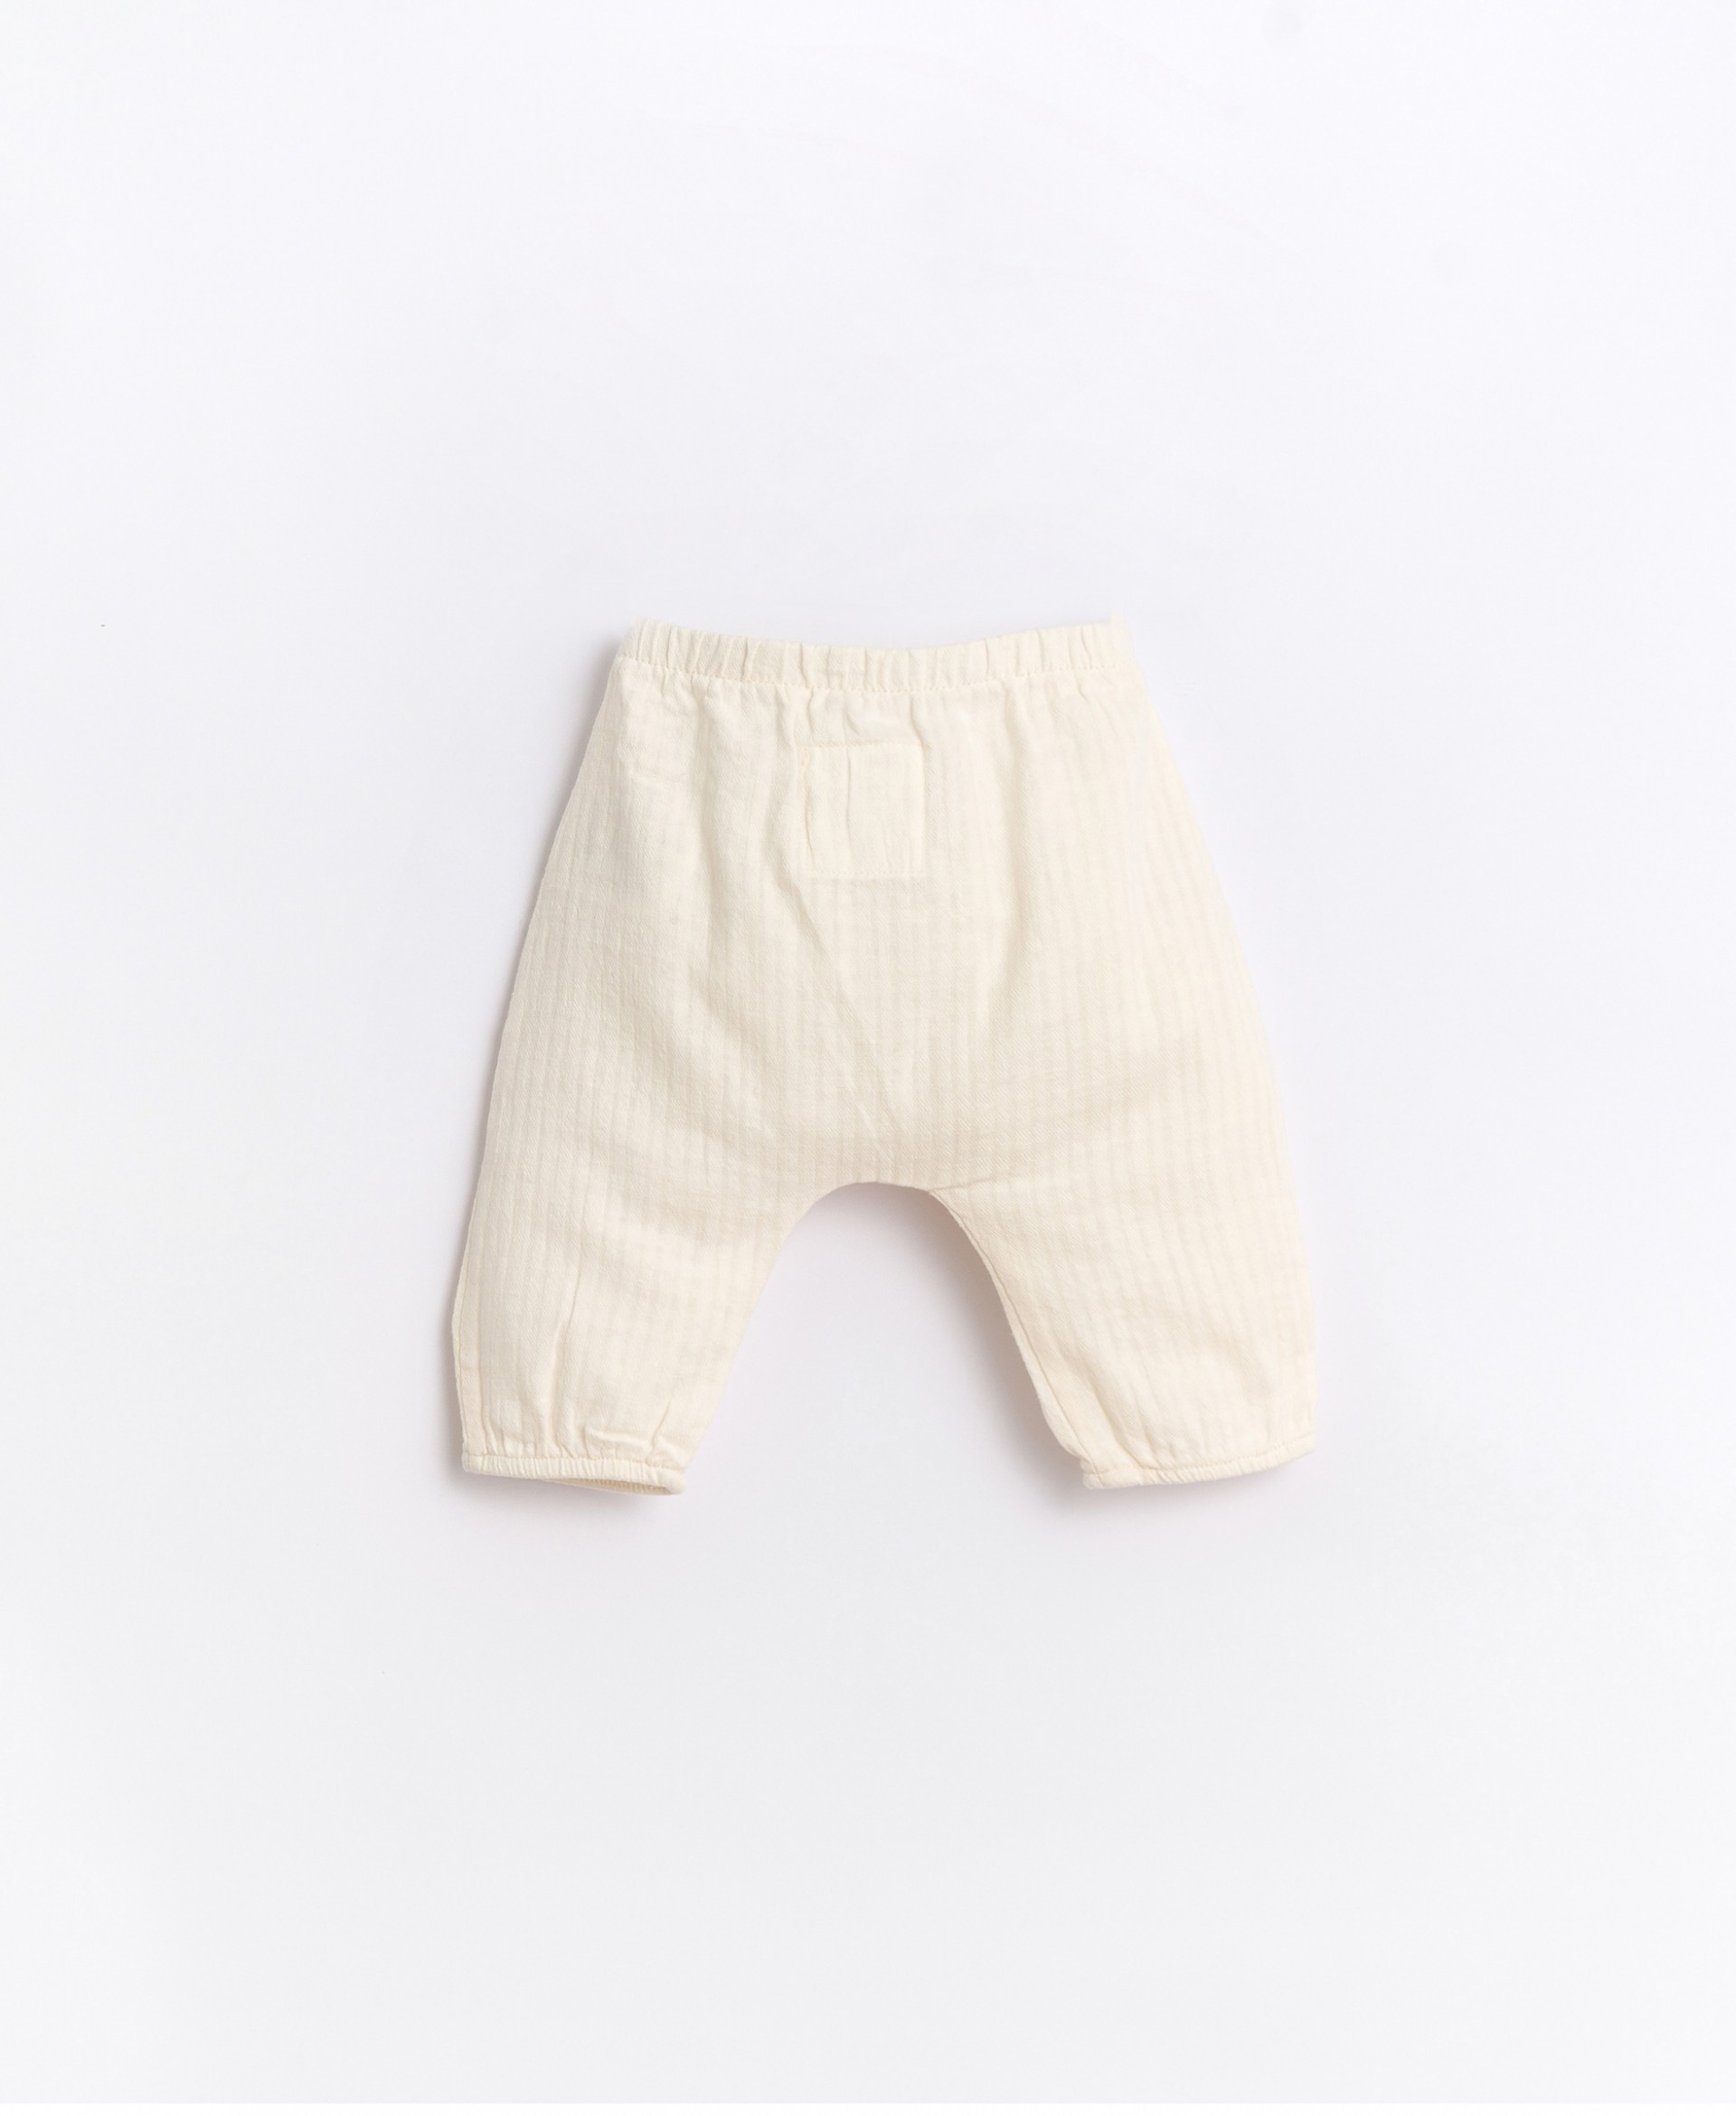 Pantaloni in tessuto con caviglie elasticizzate | Basketry